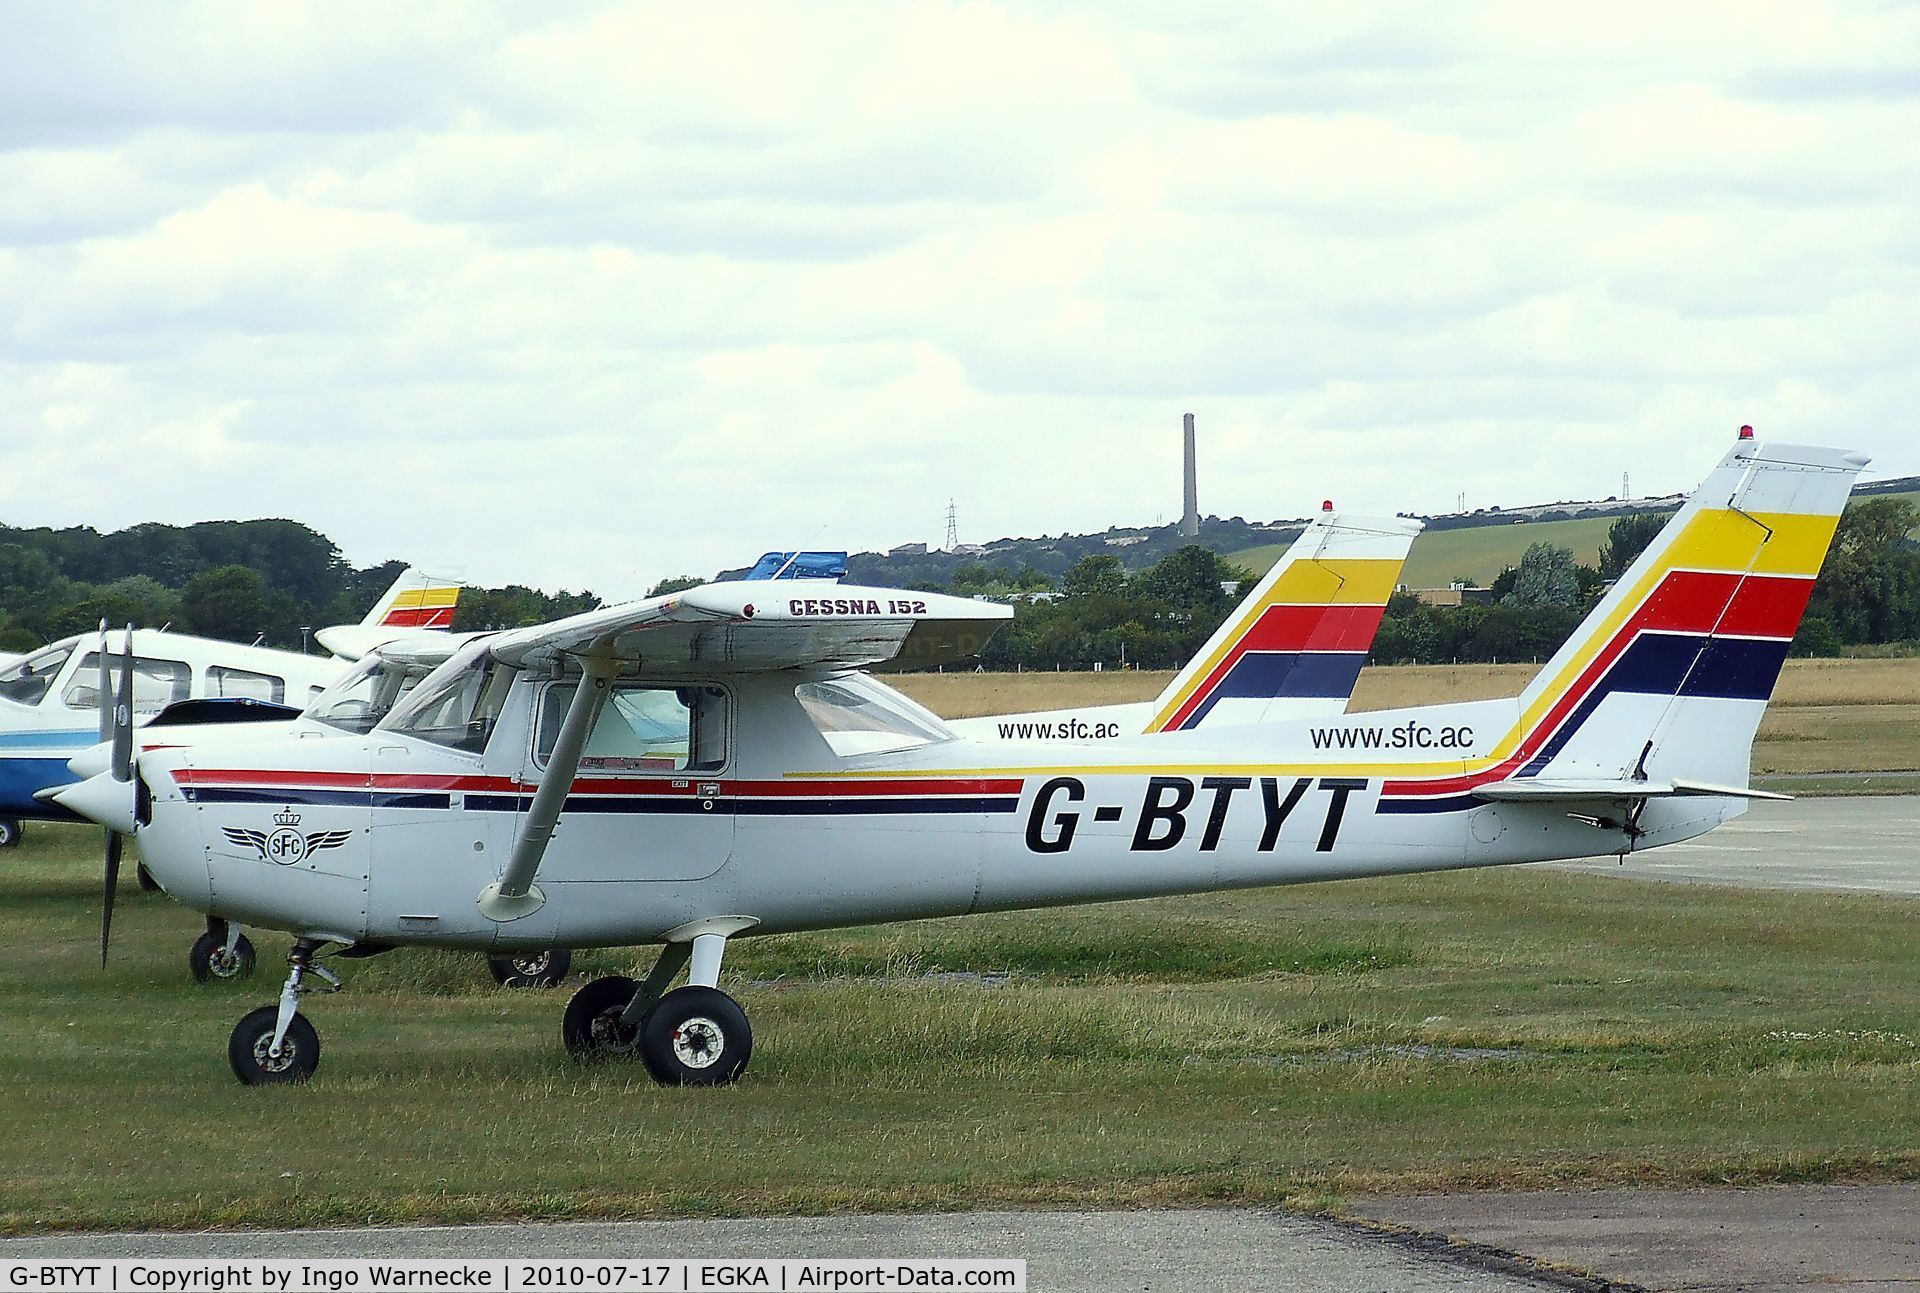 G-BTYT, 1978 Cessna 152 C/N 152-80455, Cessna 152 at Shoreham airport